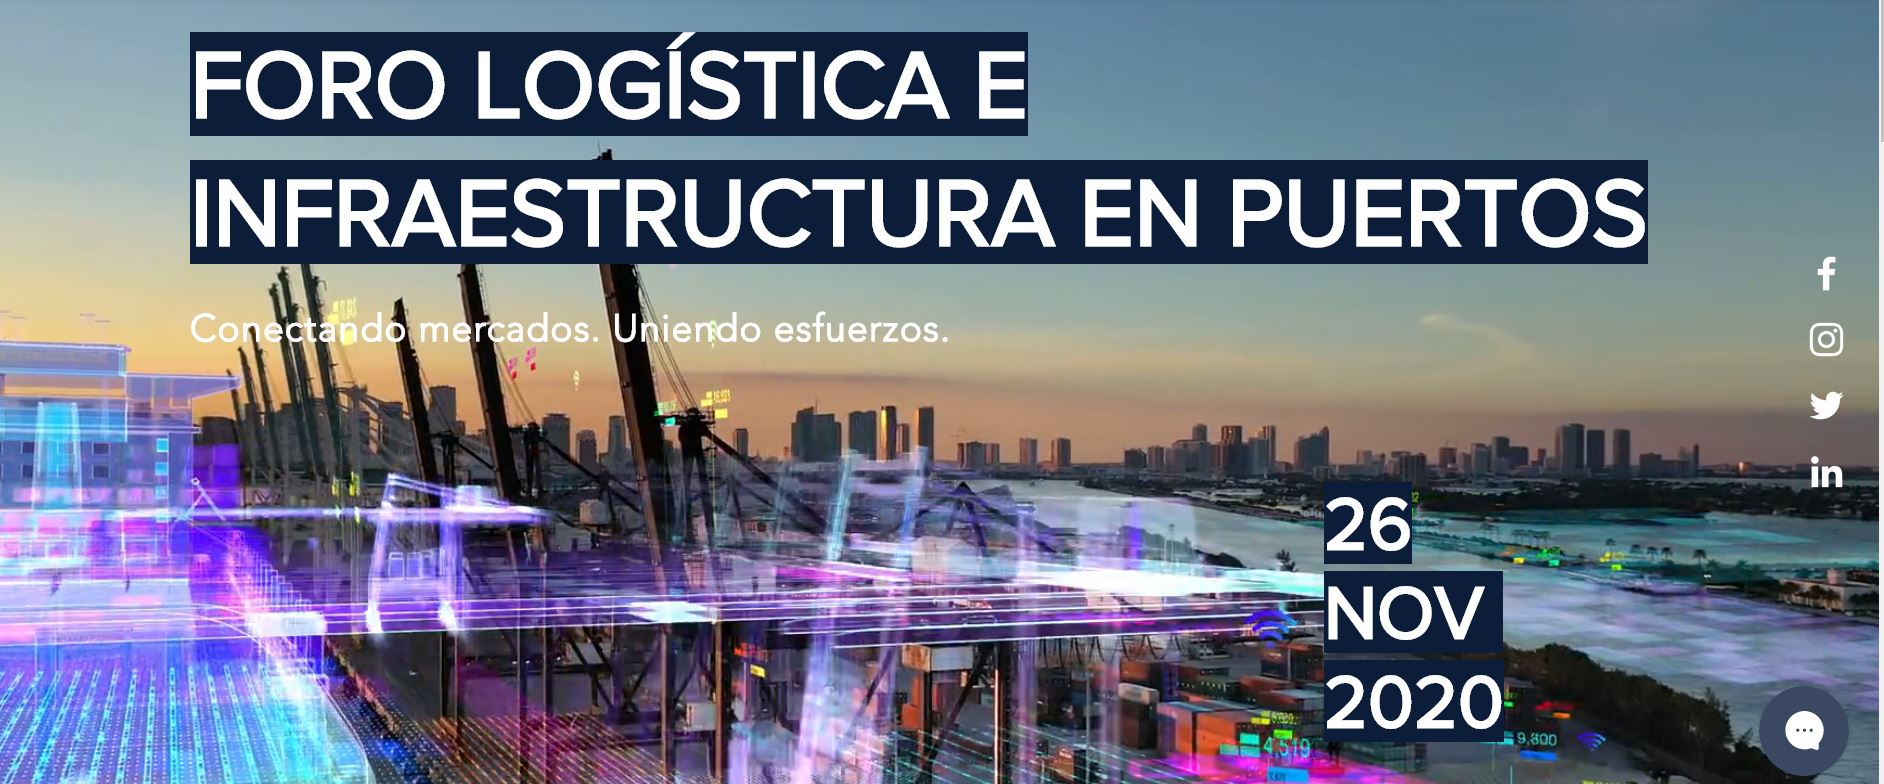 AIC expone invitado en el Foro : Logística e Infraestructuras en Puertos . AHK